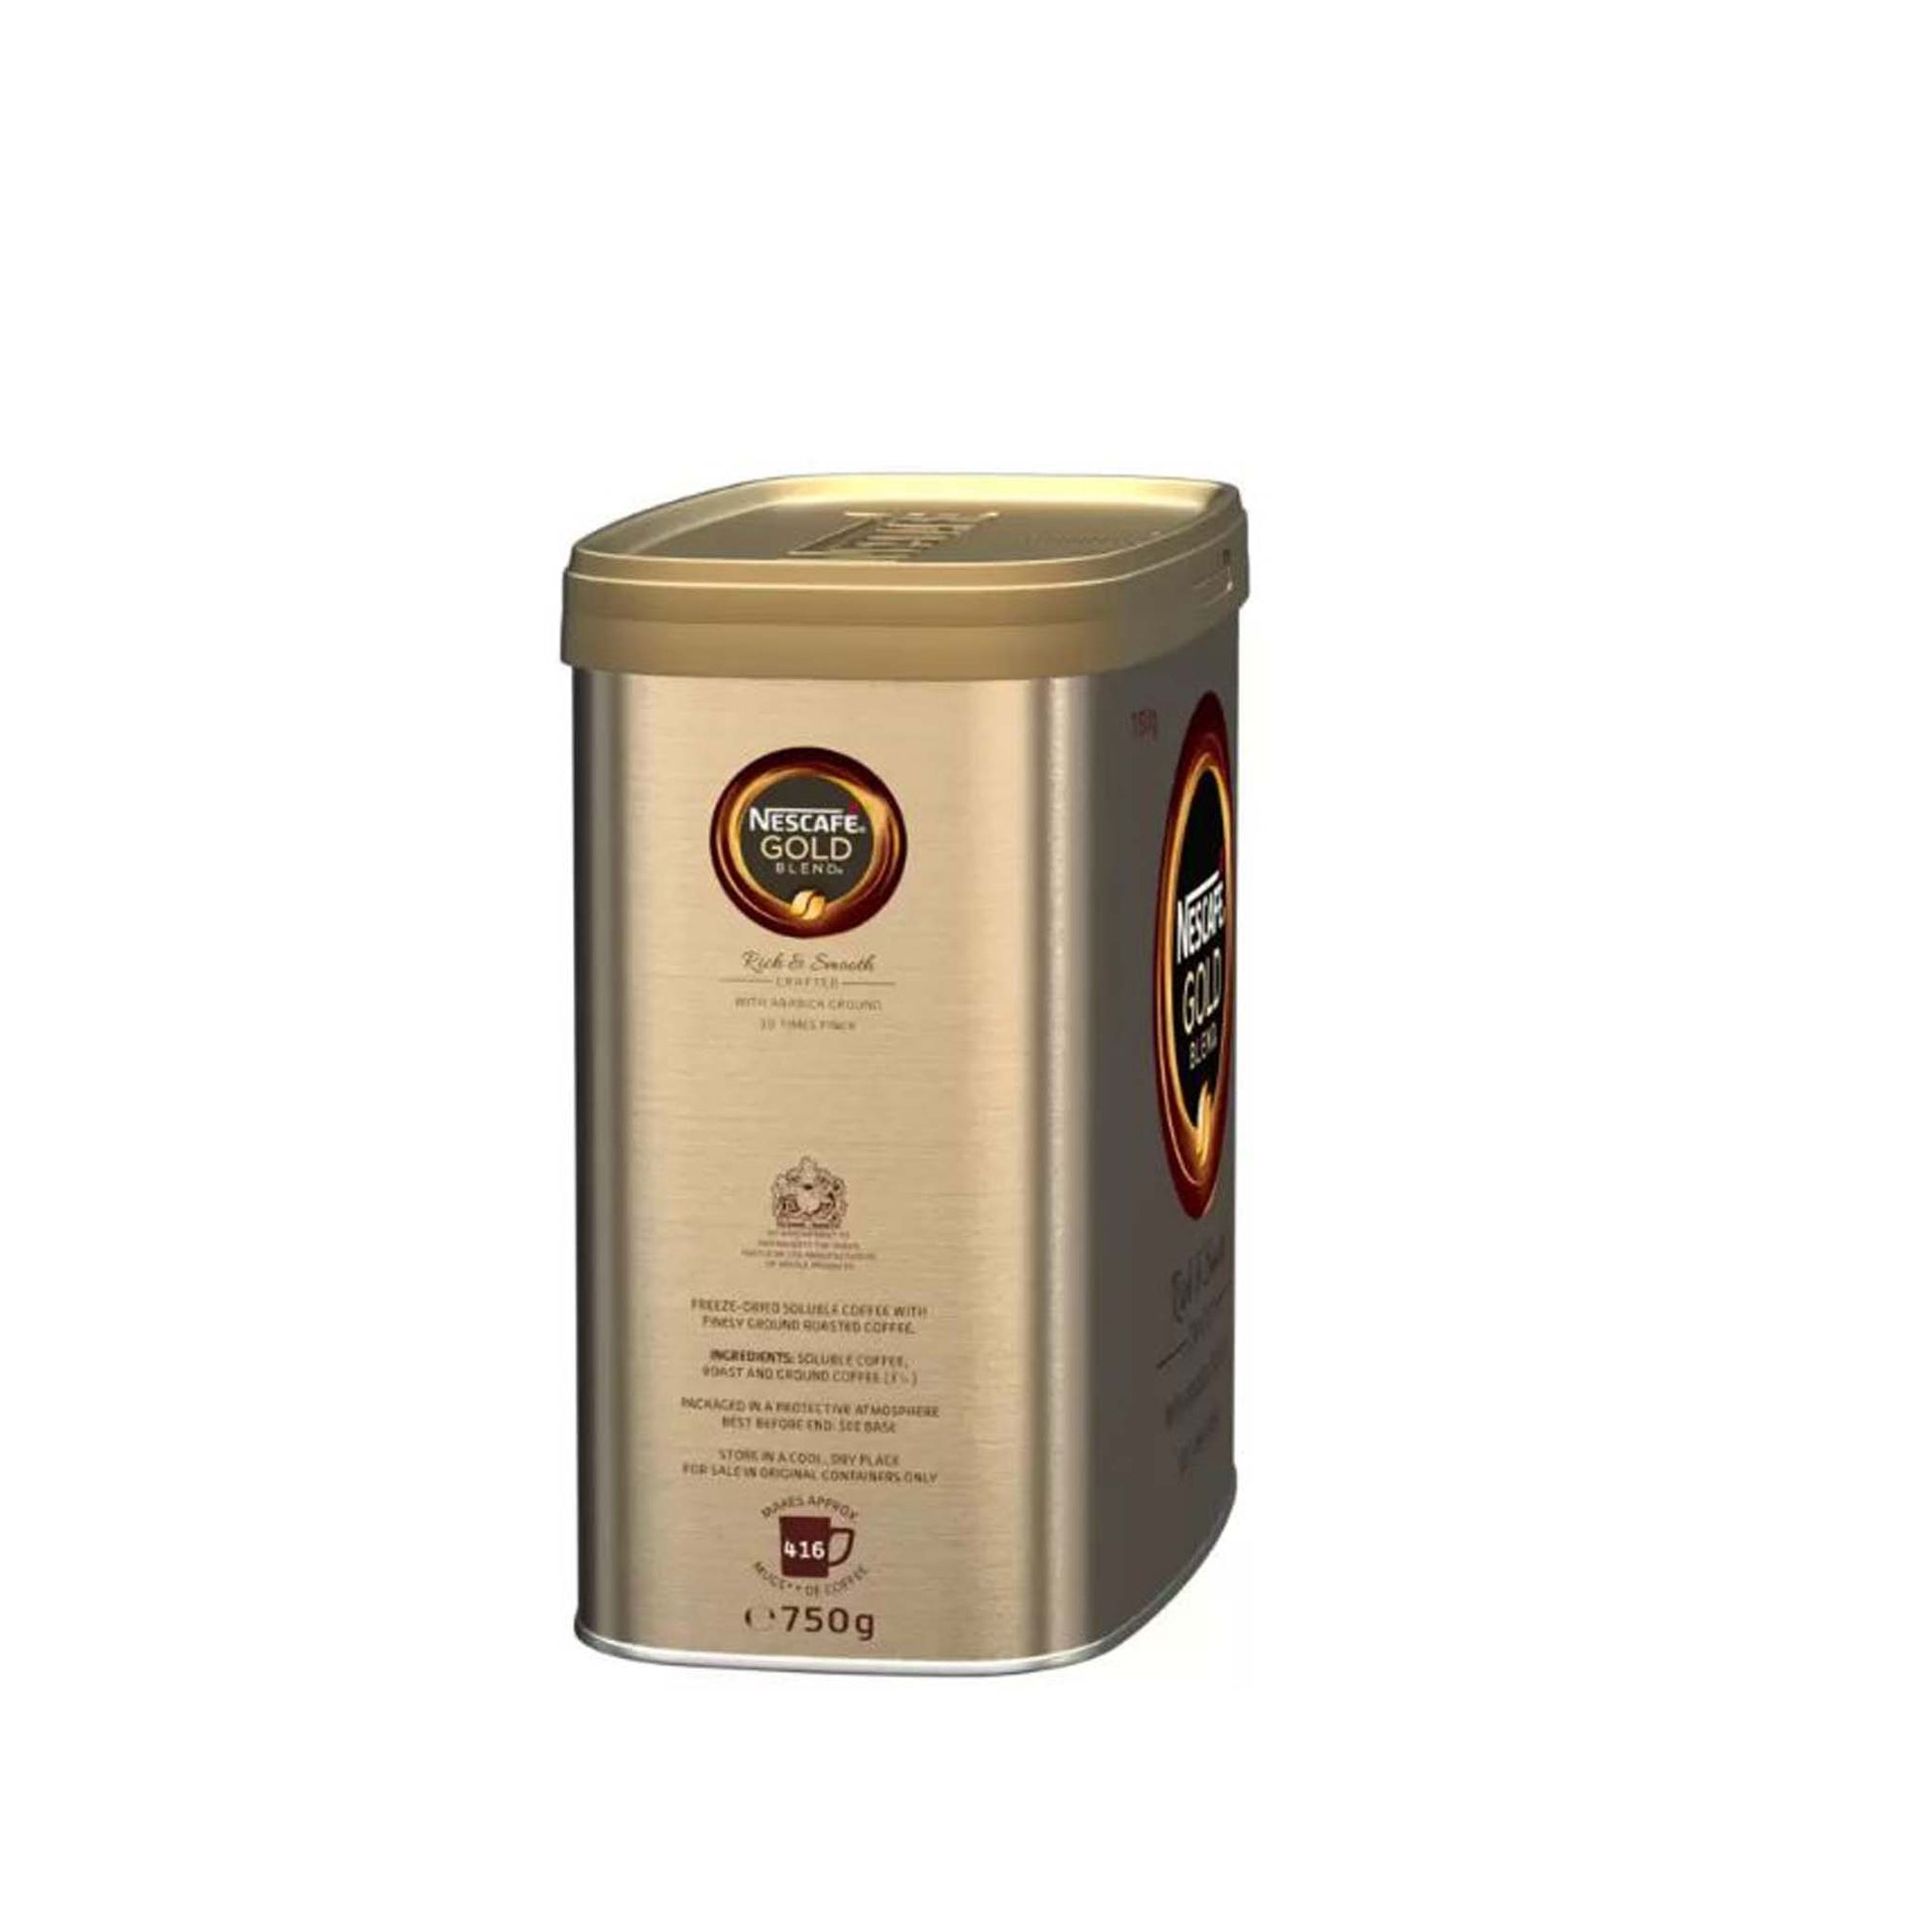 NESCAFÉ Gold Blend 750g Coffee Tin